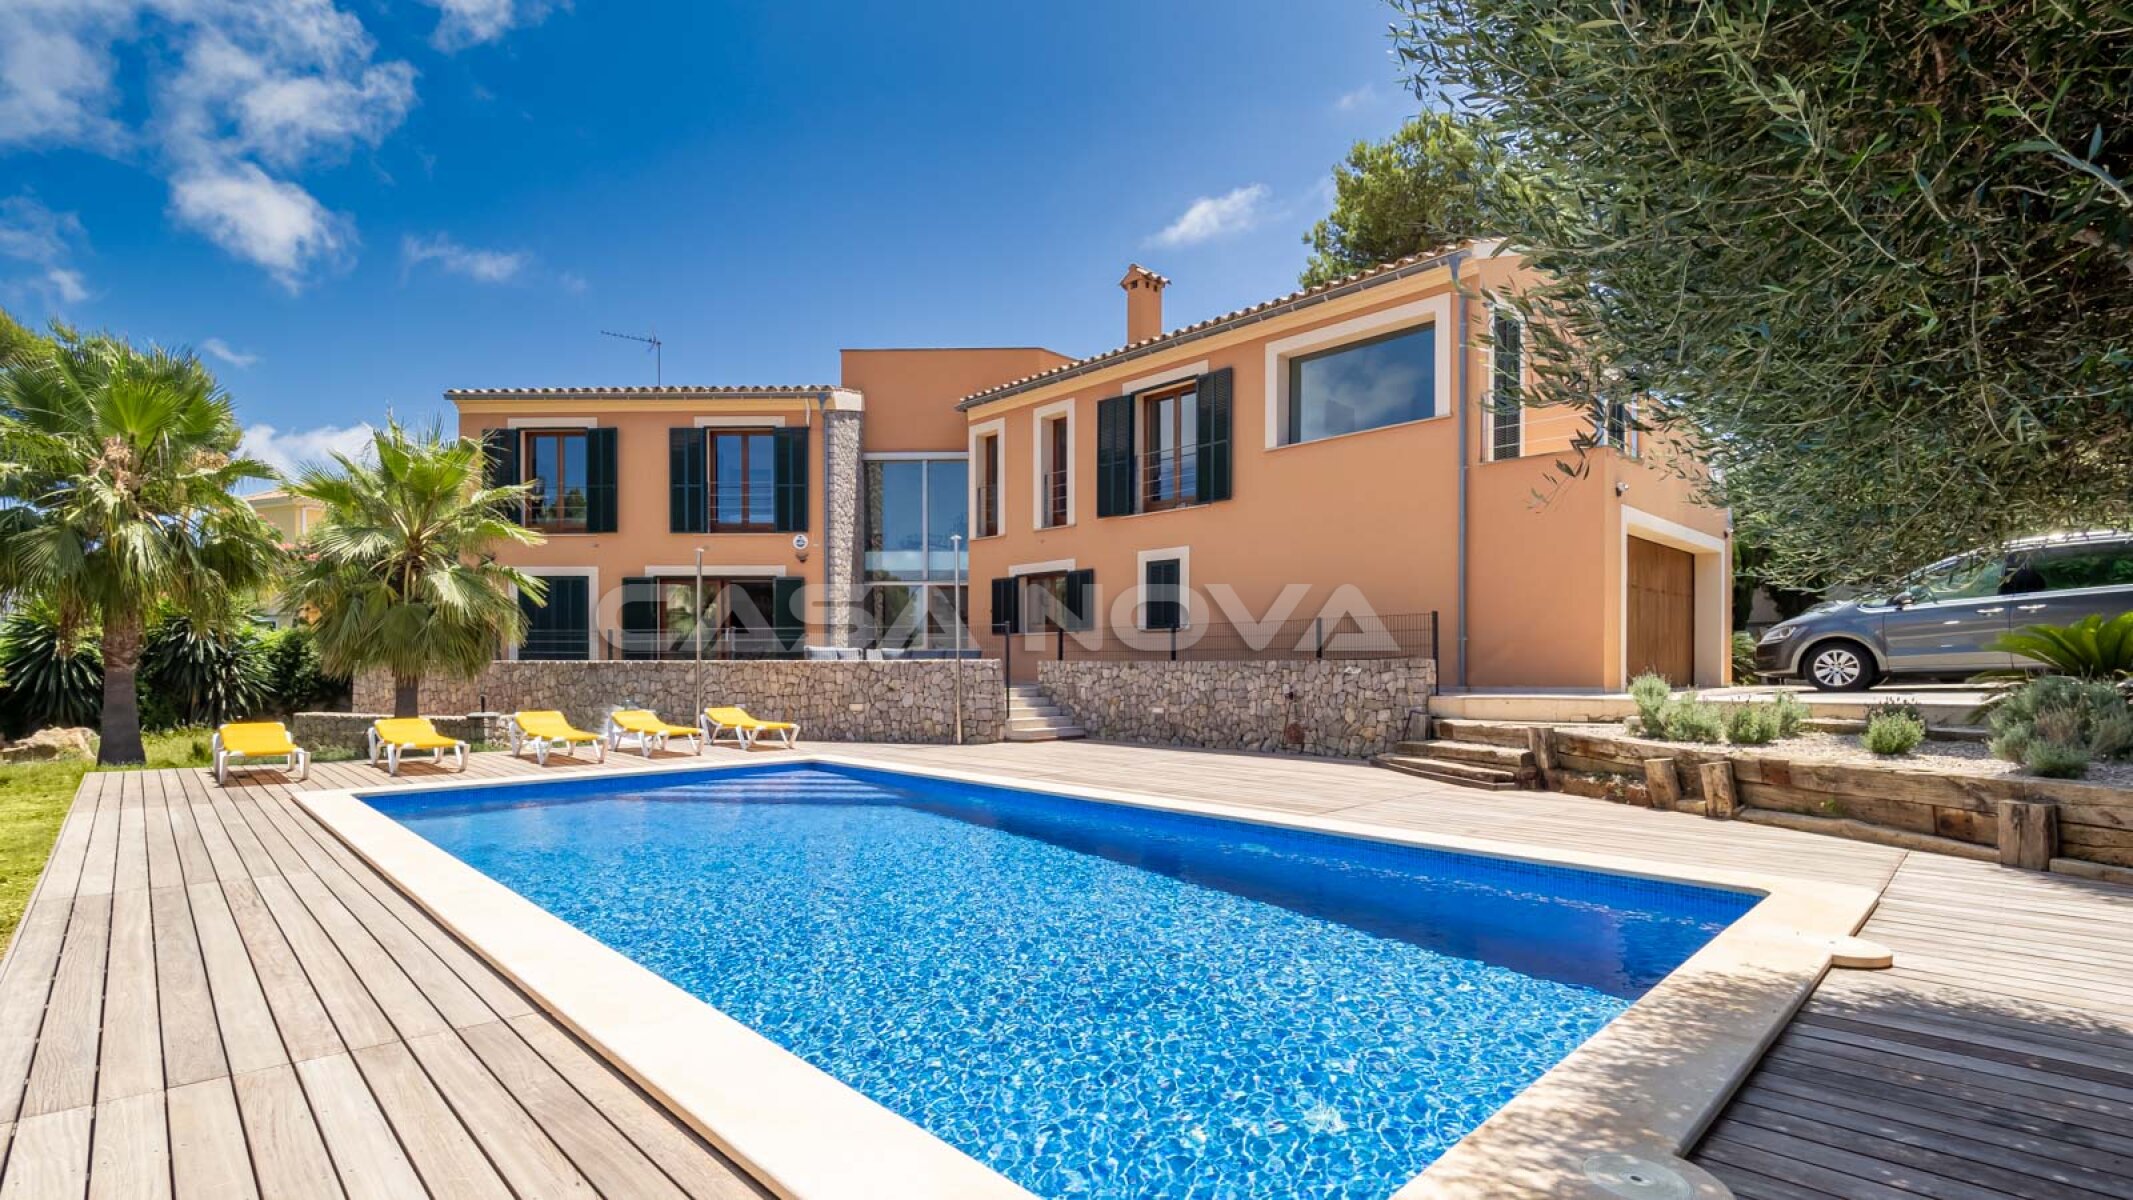 Imposante Mallorca Villa mit Pool in ruhiger Lage